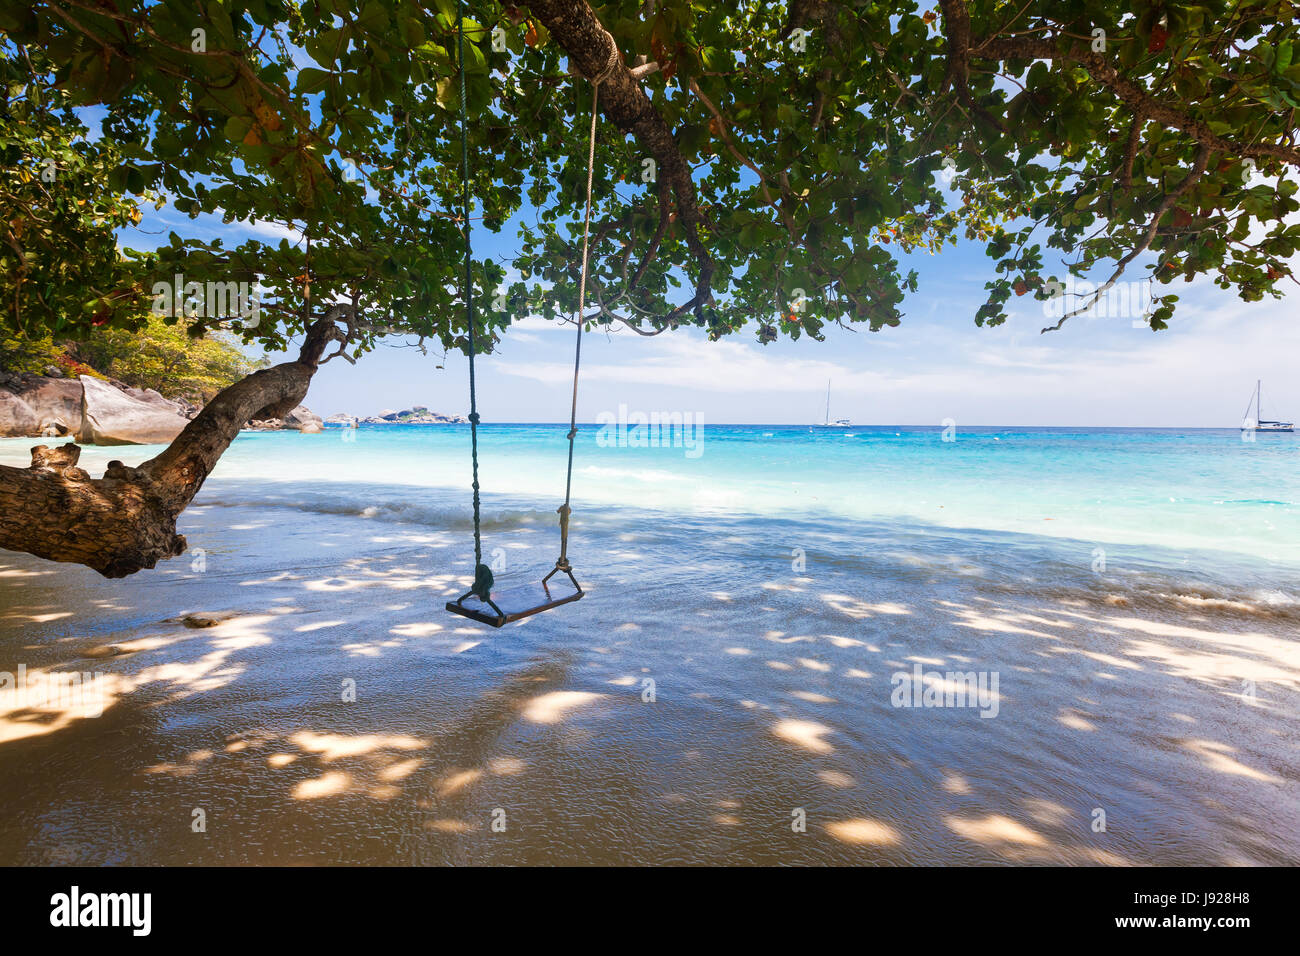 La spiaggia incontaminata con acqua turchese e swing corda, fogliame verde Foto Stock